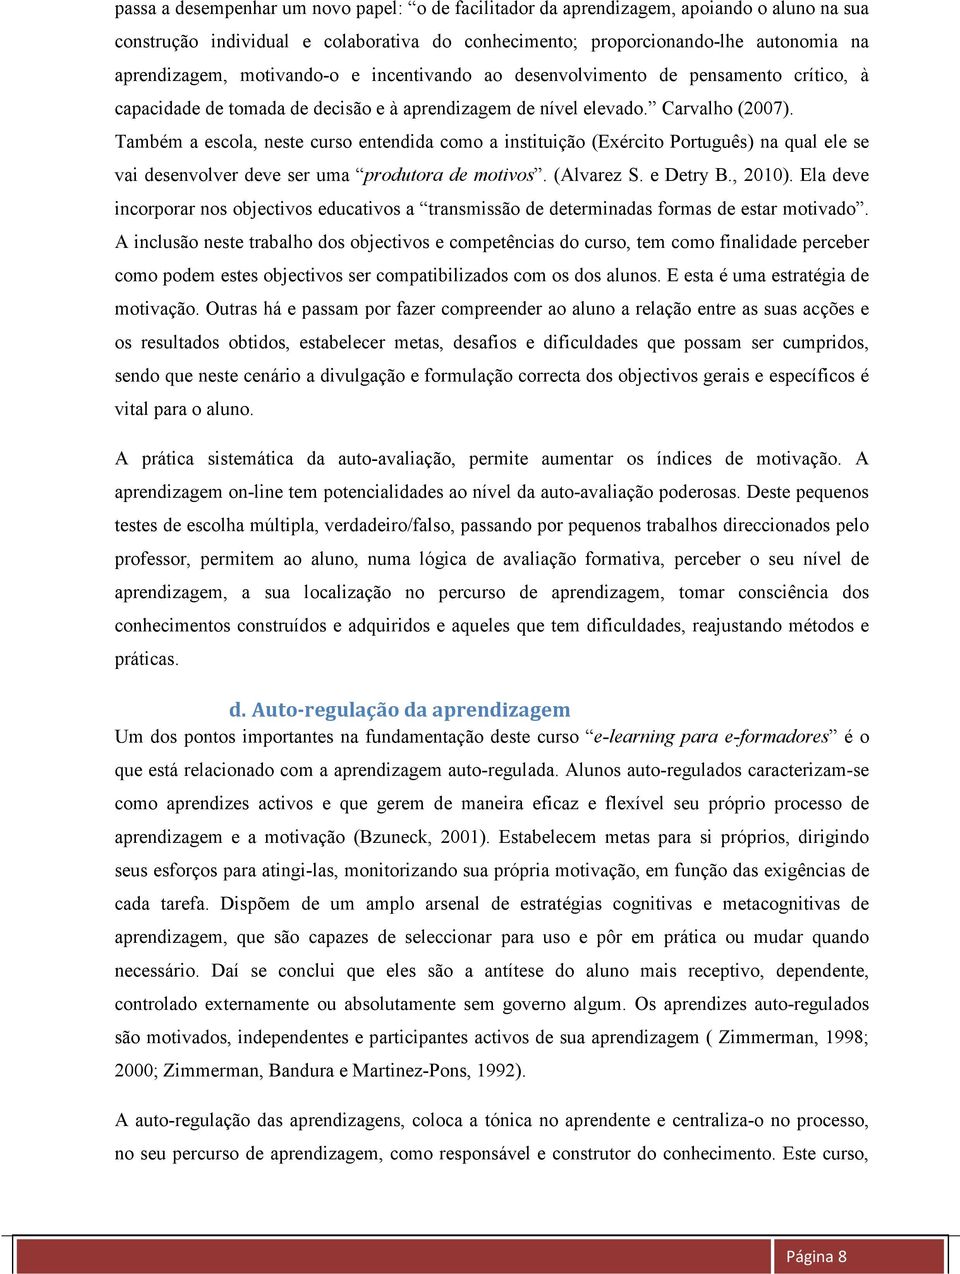 Também a escola, neste curso entendida como a instituição (Exército Português) na qual ele se vai desenvolver deve ser uma produtora de motivos. (Alvarez S. e Detry B., 2010).